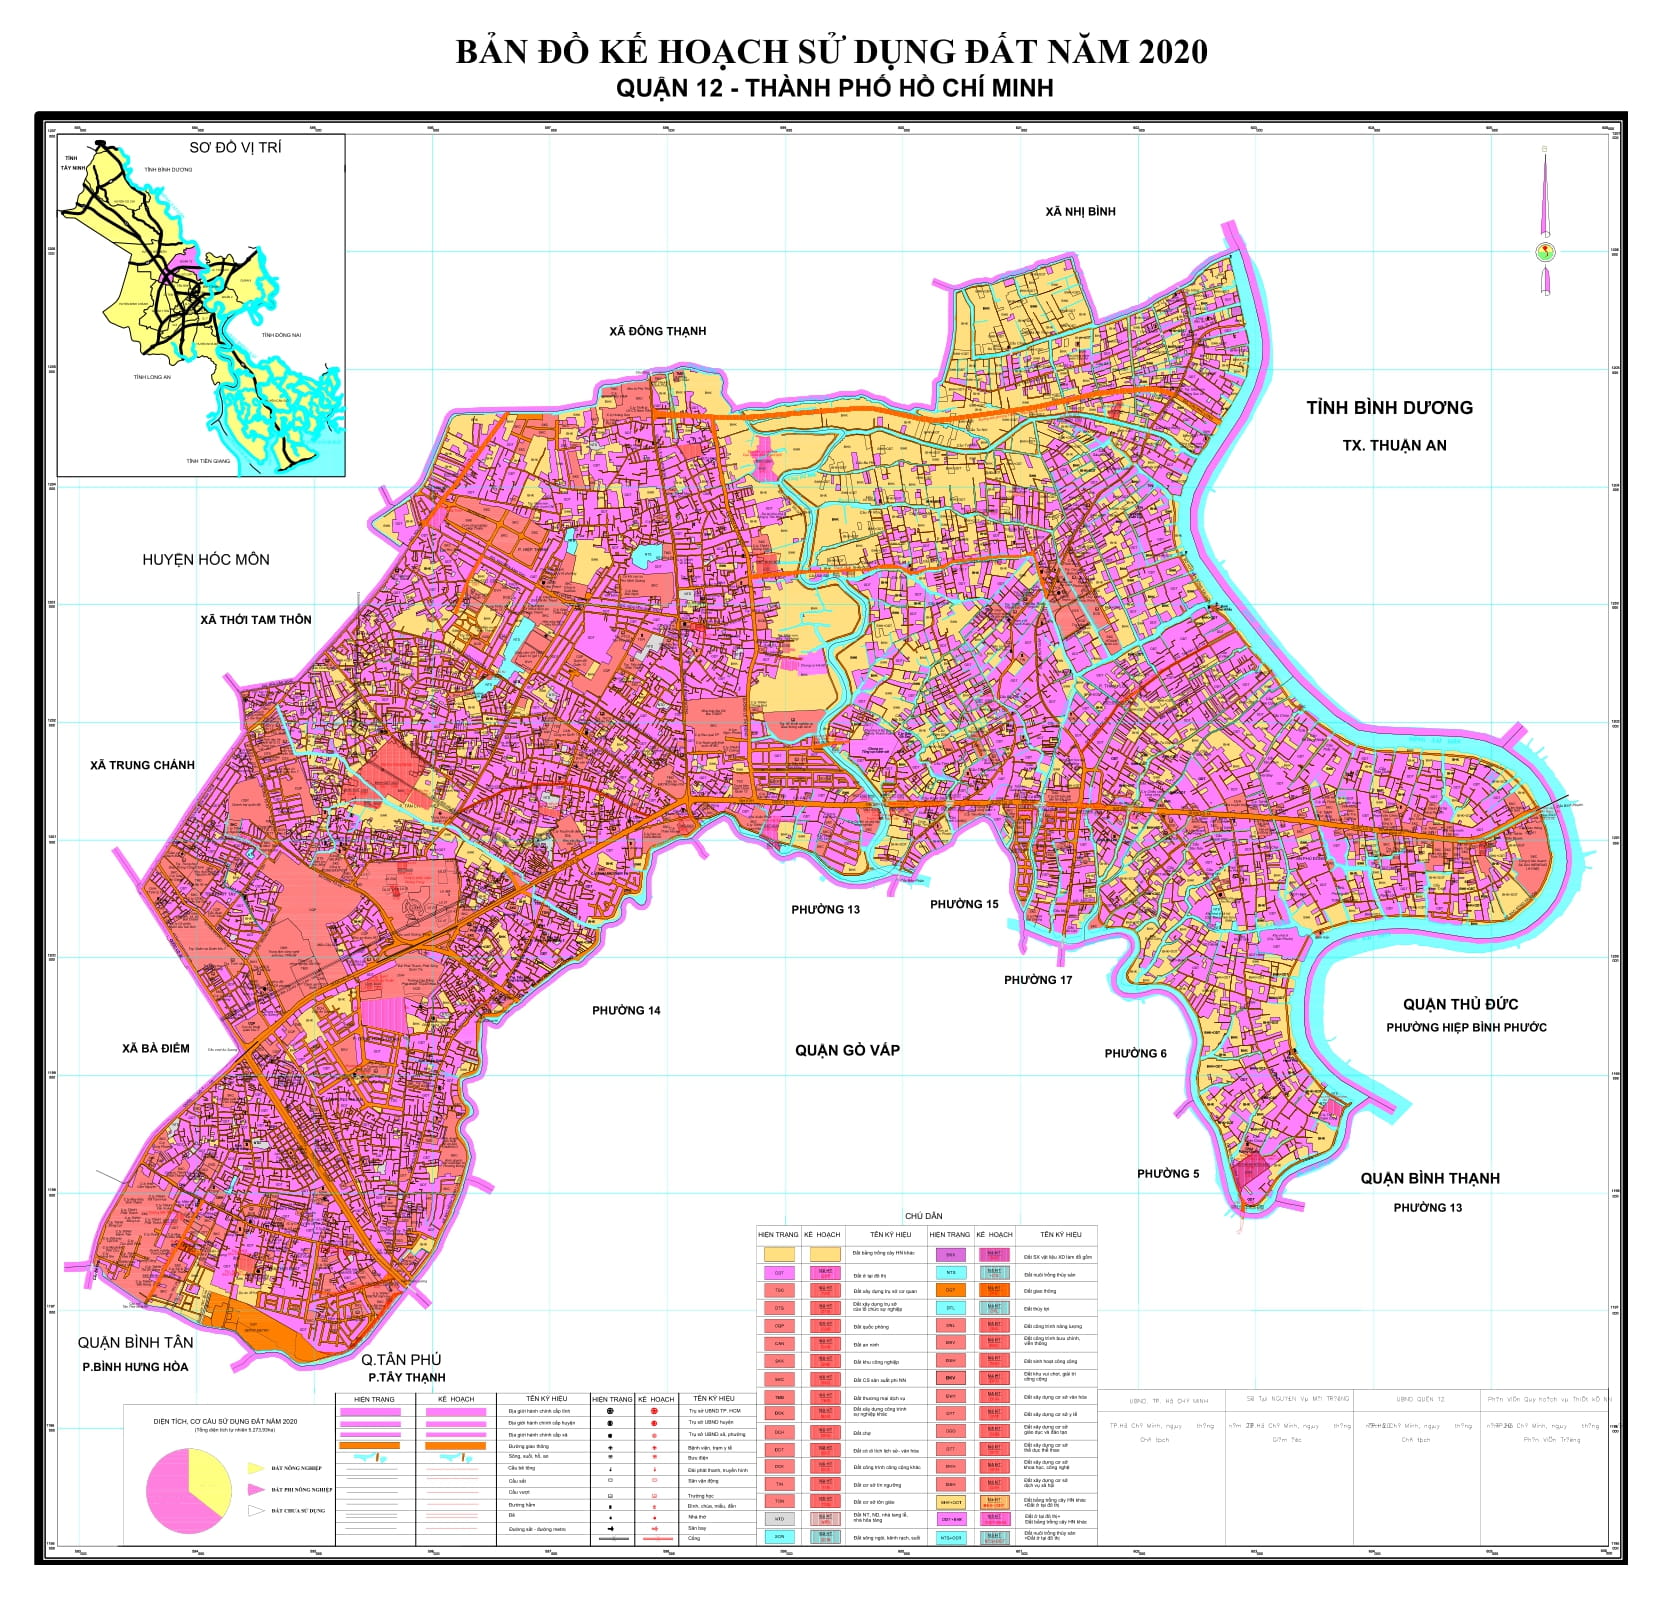 bản đồ quy hoạch quận 12 phát triển theo từng năm